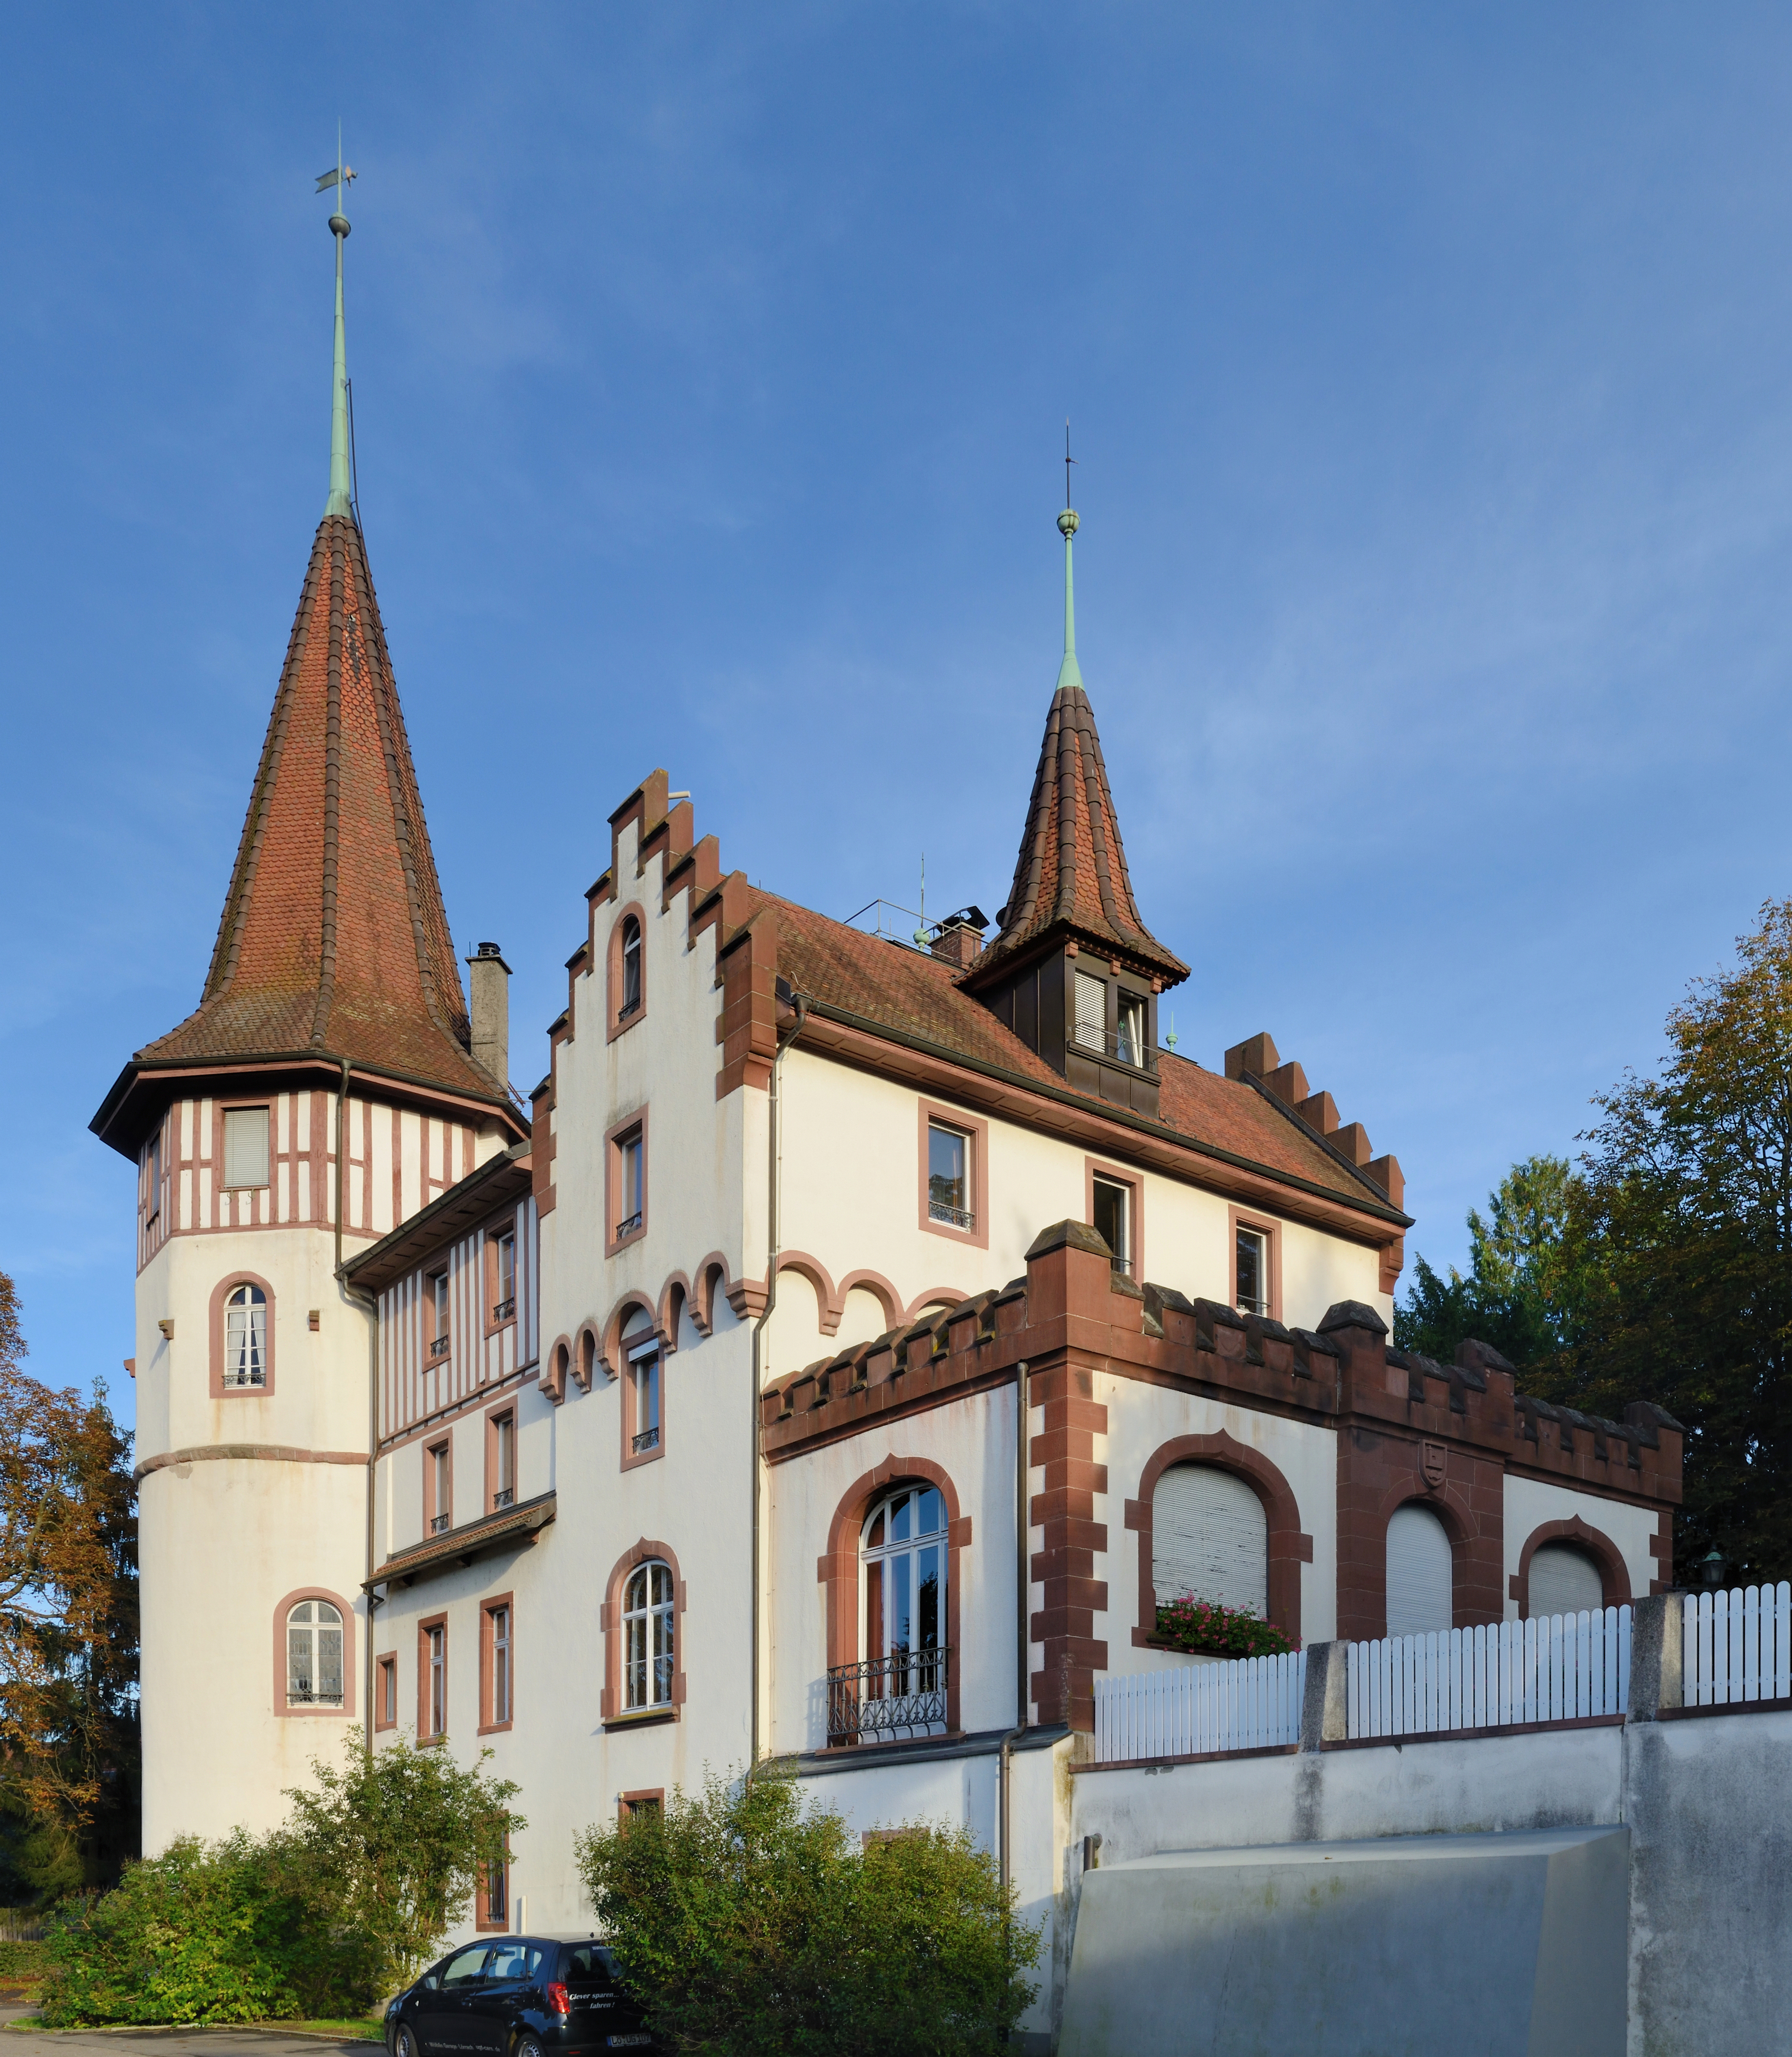 Lörrach-Brombach: Castle Brombach